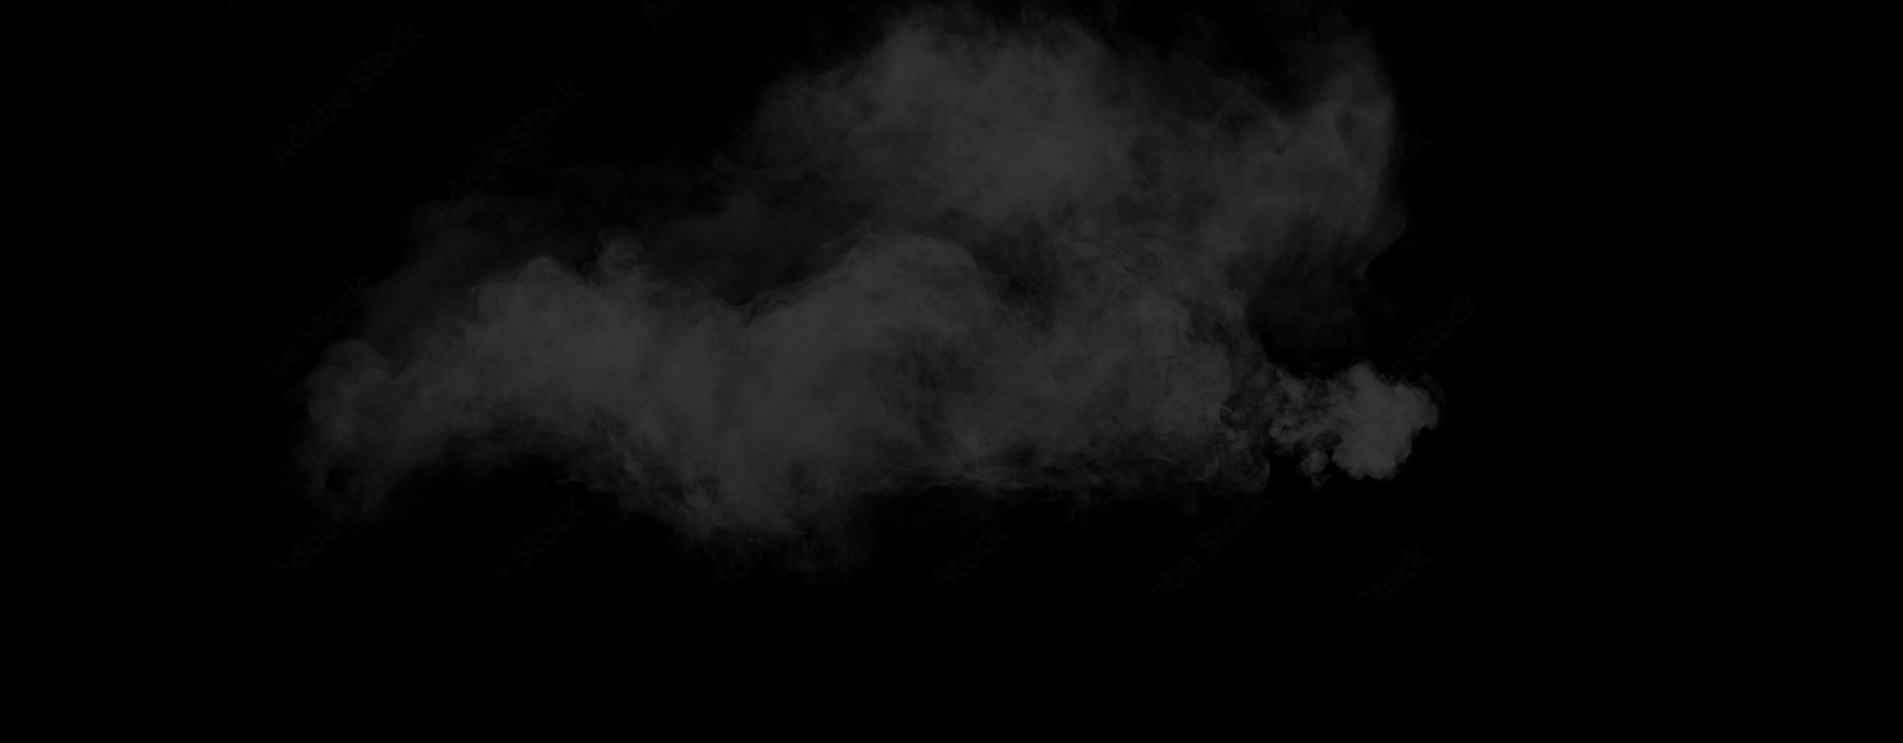 image of smoke on black background